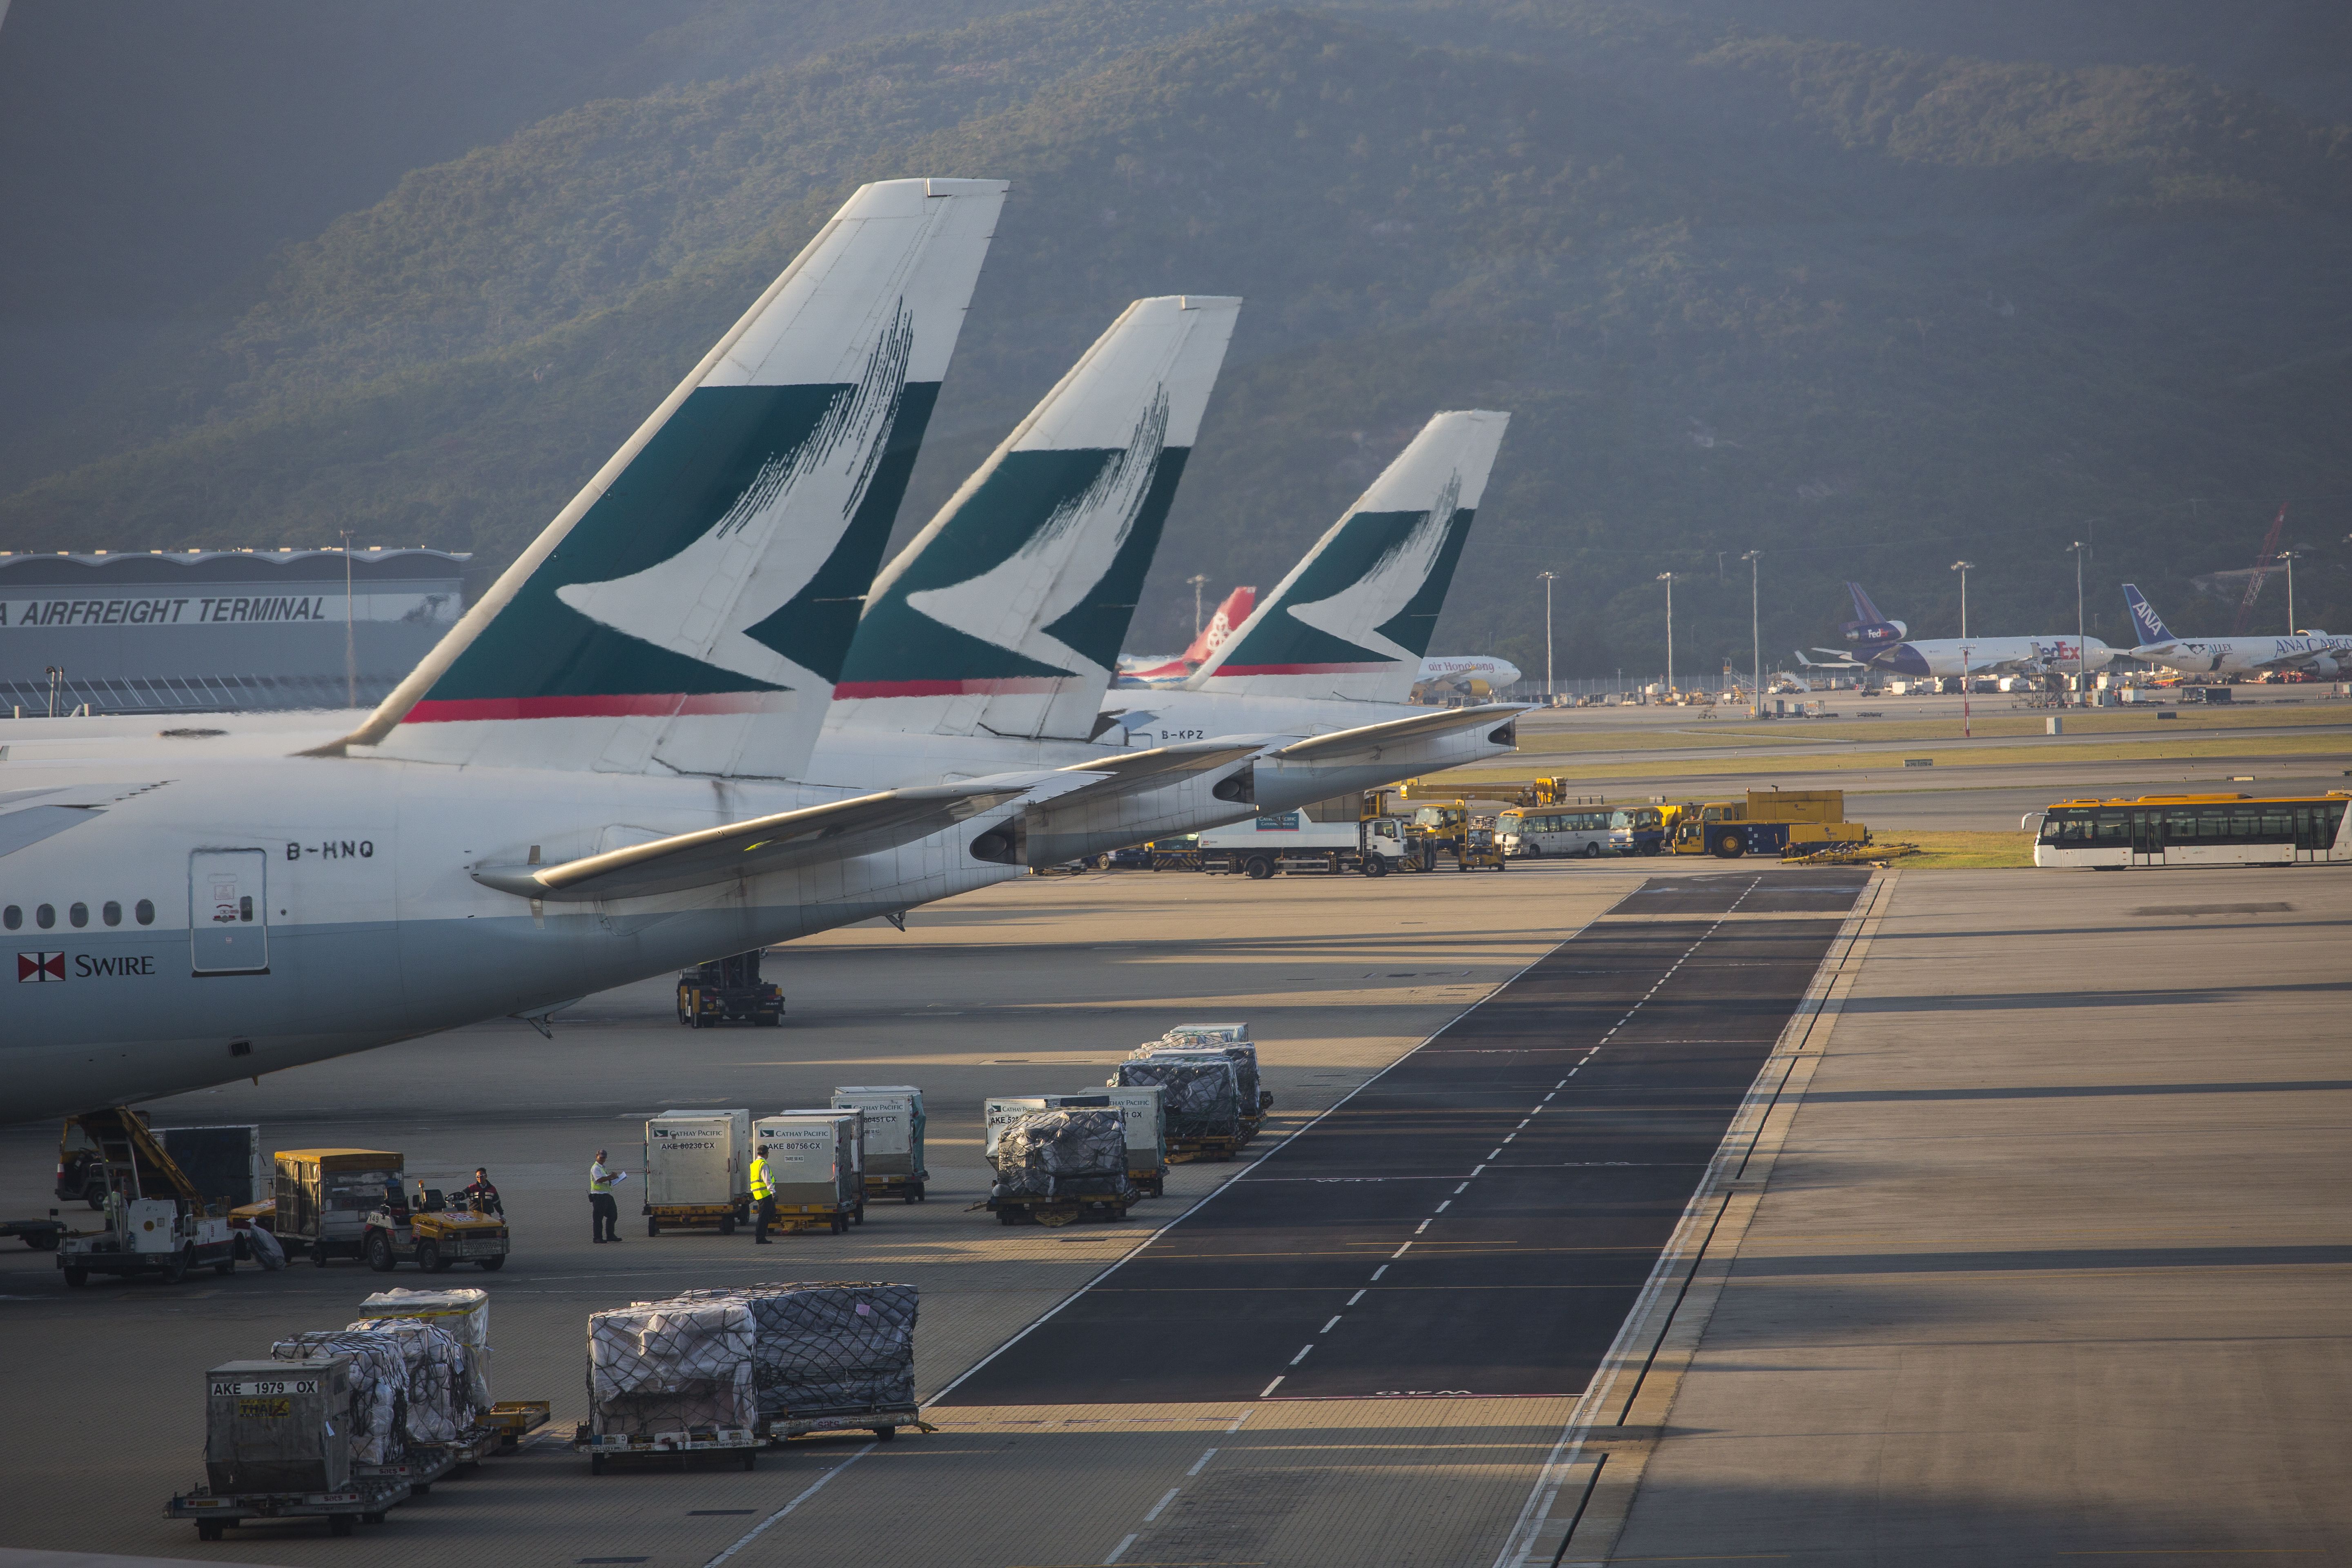 Cathay Pacific aircraft on the tarmac at Hong Kong Airport